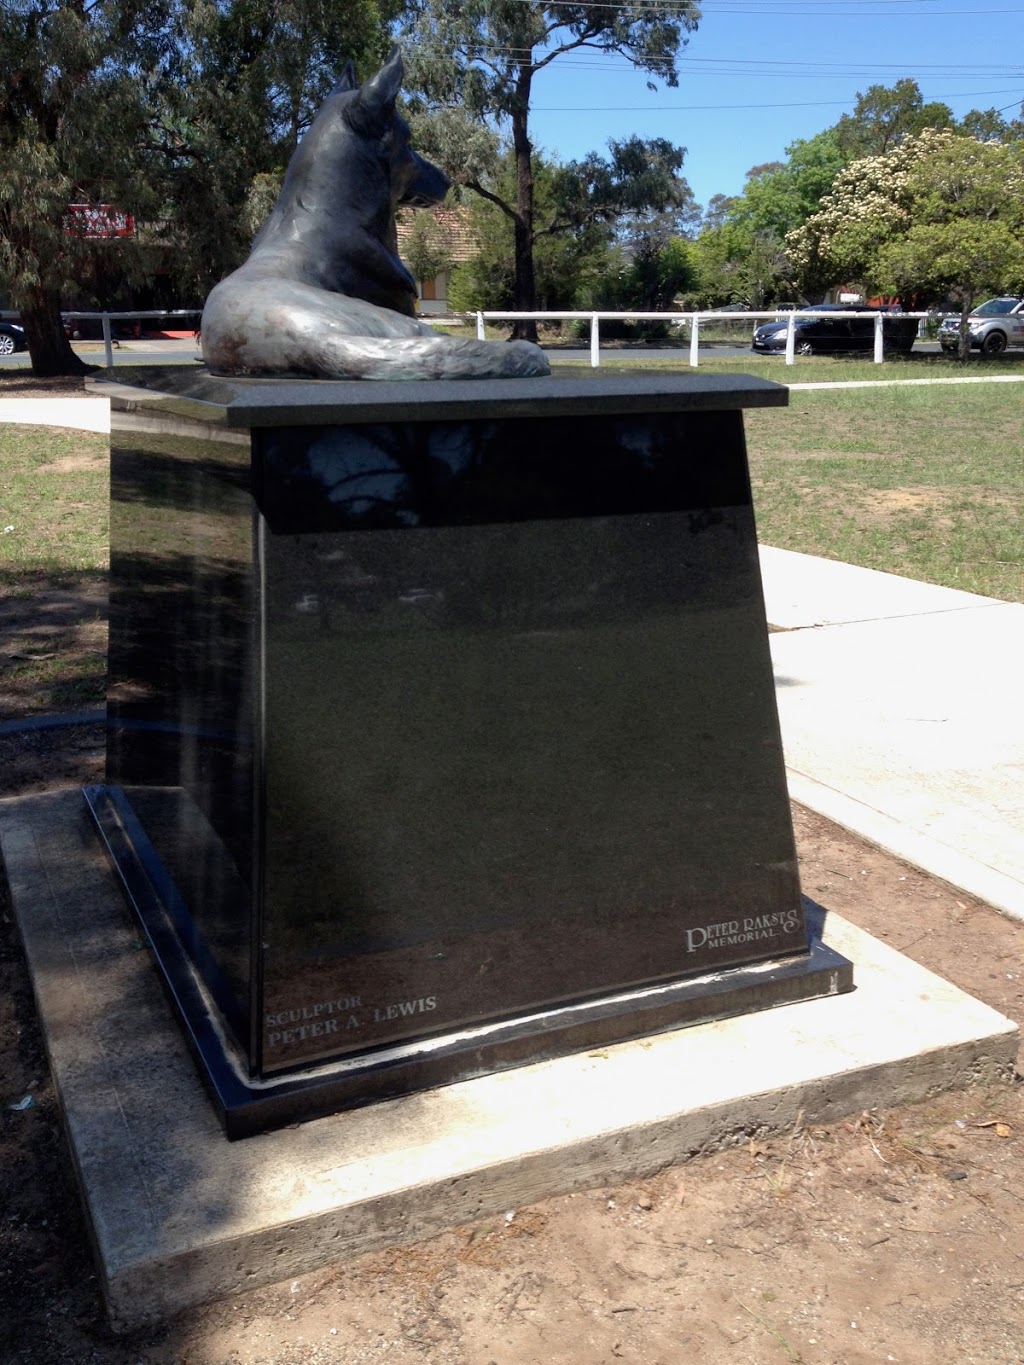 K-9 Police Dog Memorial | park | Tahmoor NSW 2573, Australia